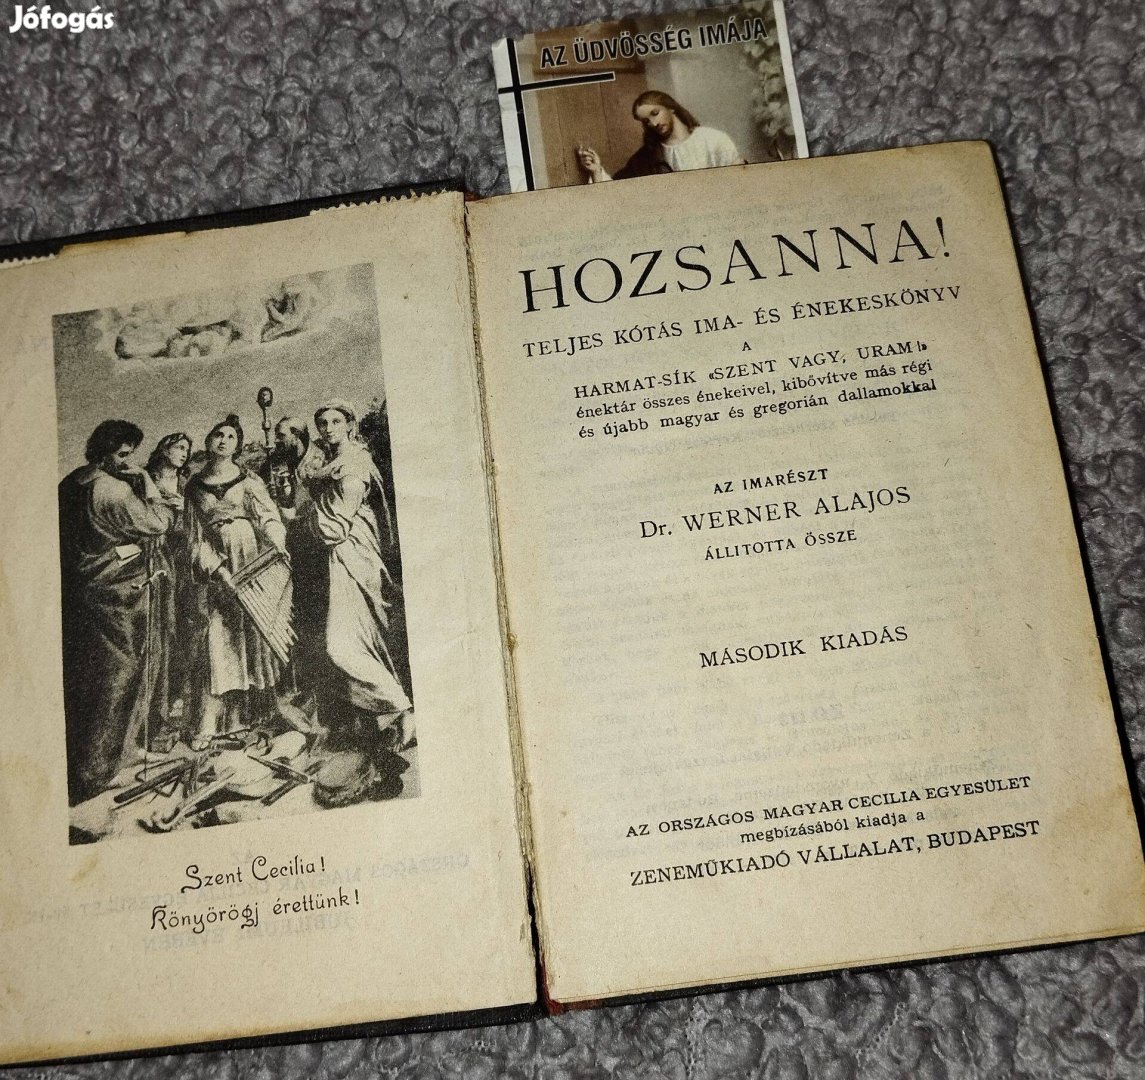 Hozsanna! Teljes kótás ima- és énekeskönyv